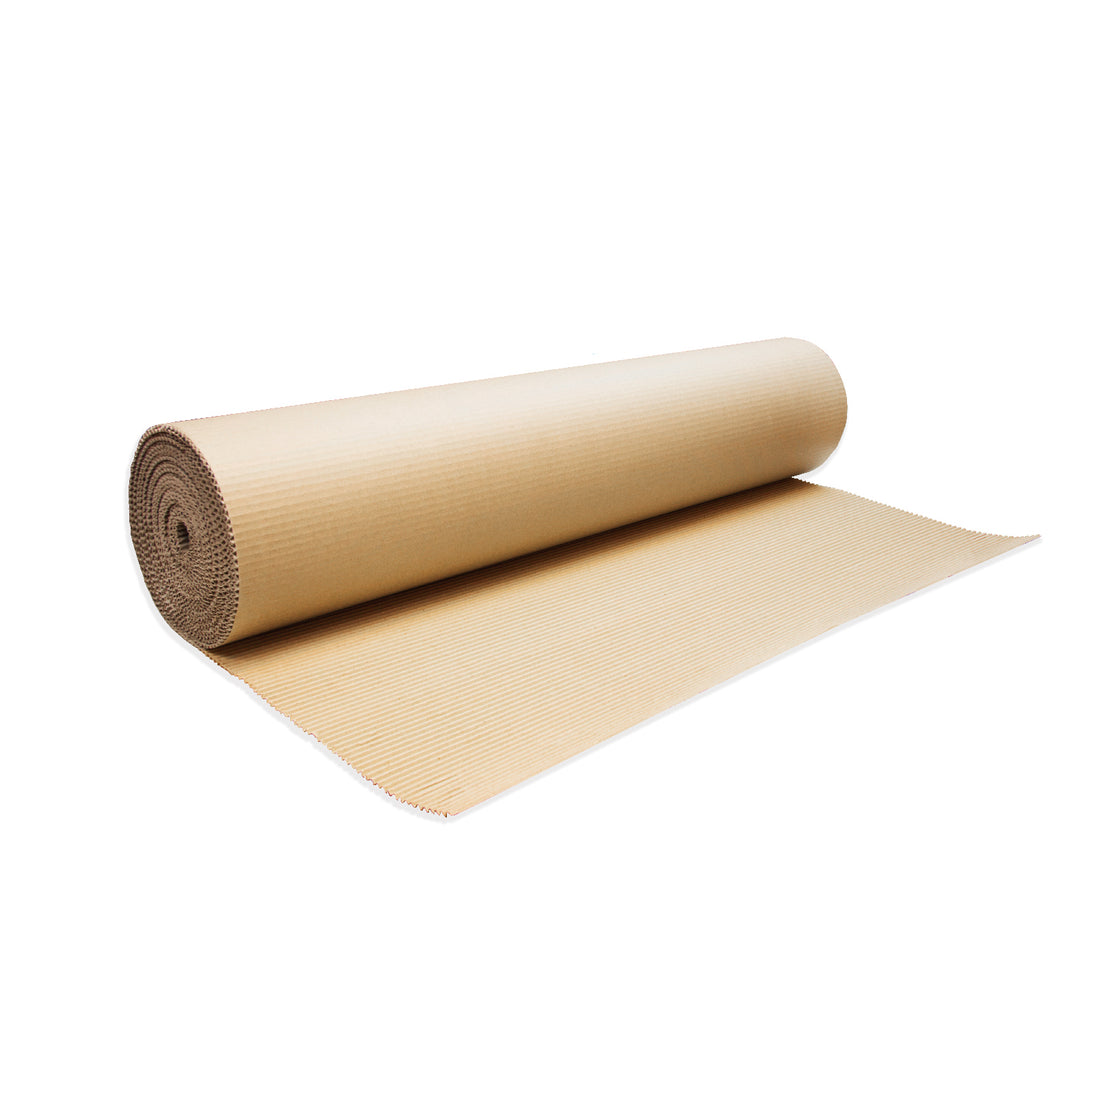 Corrugated Roll 見坑紙(紙皮卷)